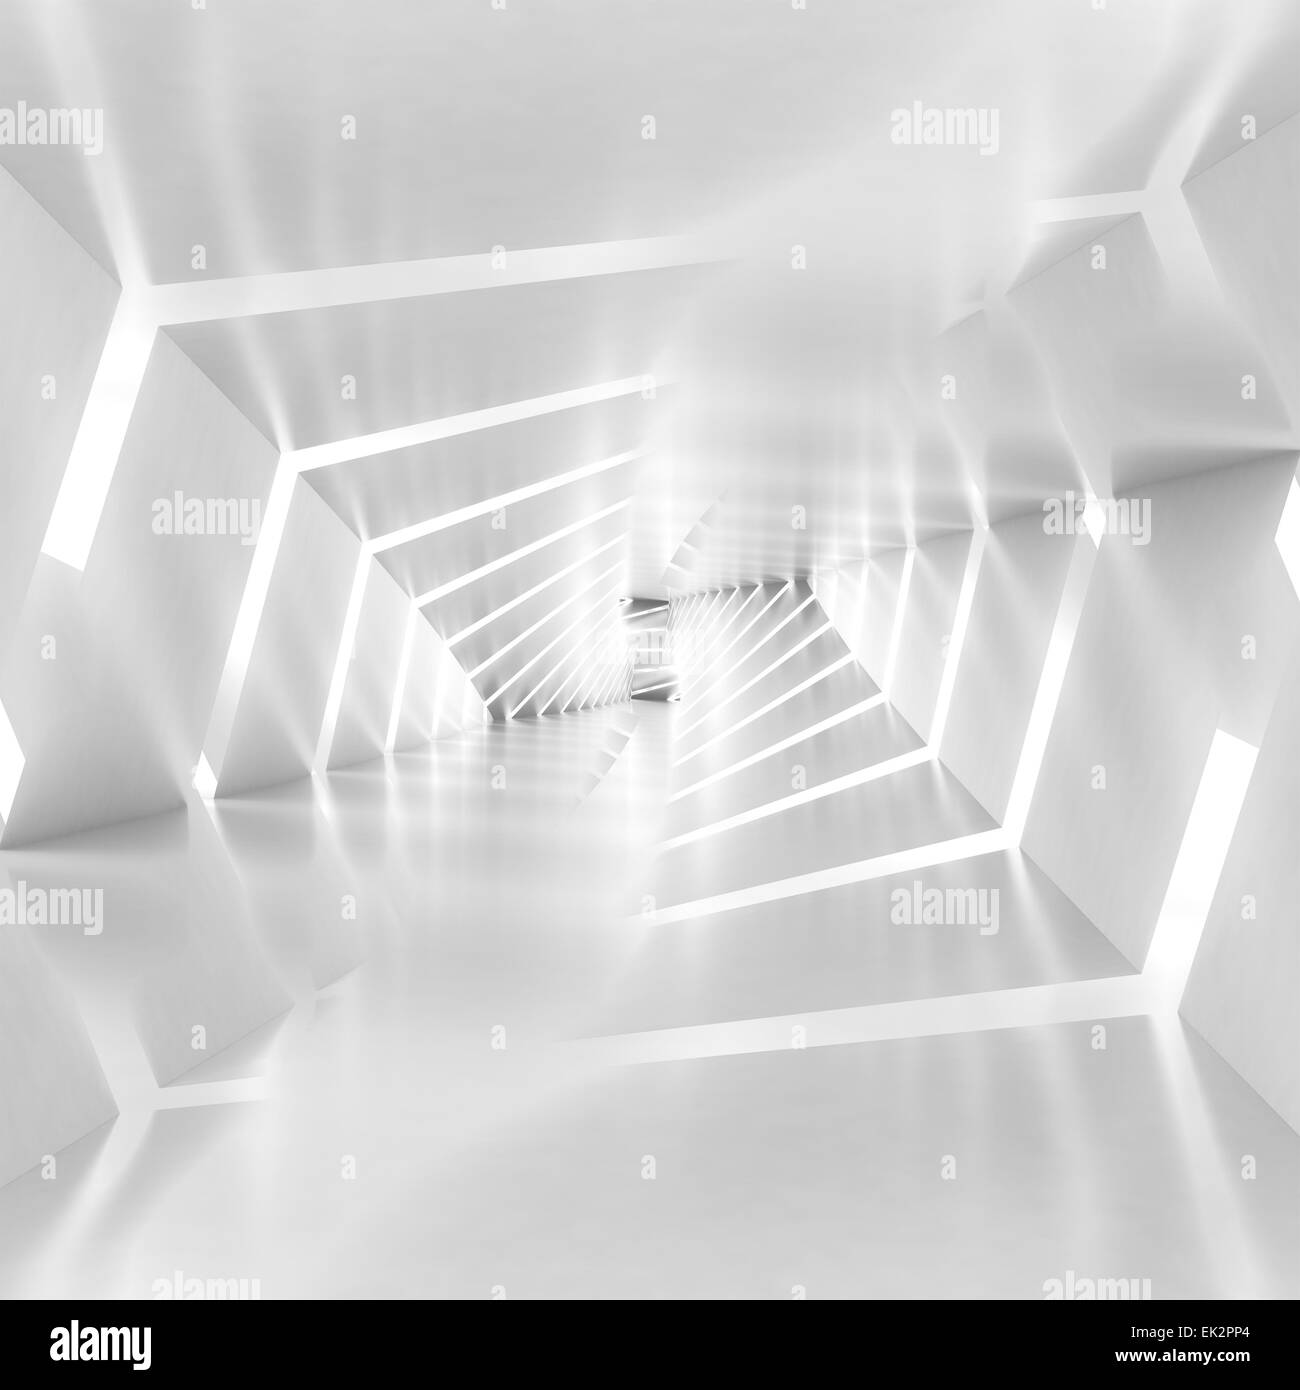 Abstract background tunnel surréaliste avec murs en spirale, 3d illustration Banque D'Images